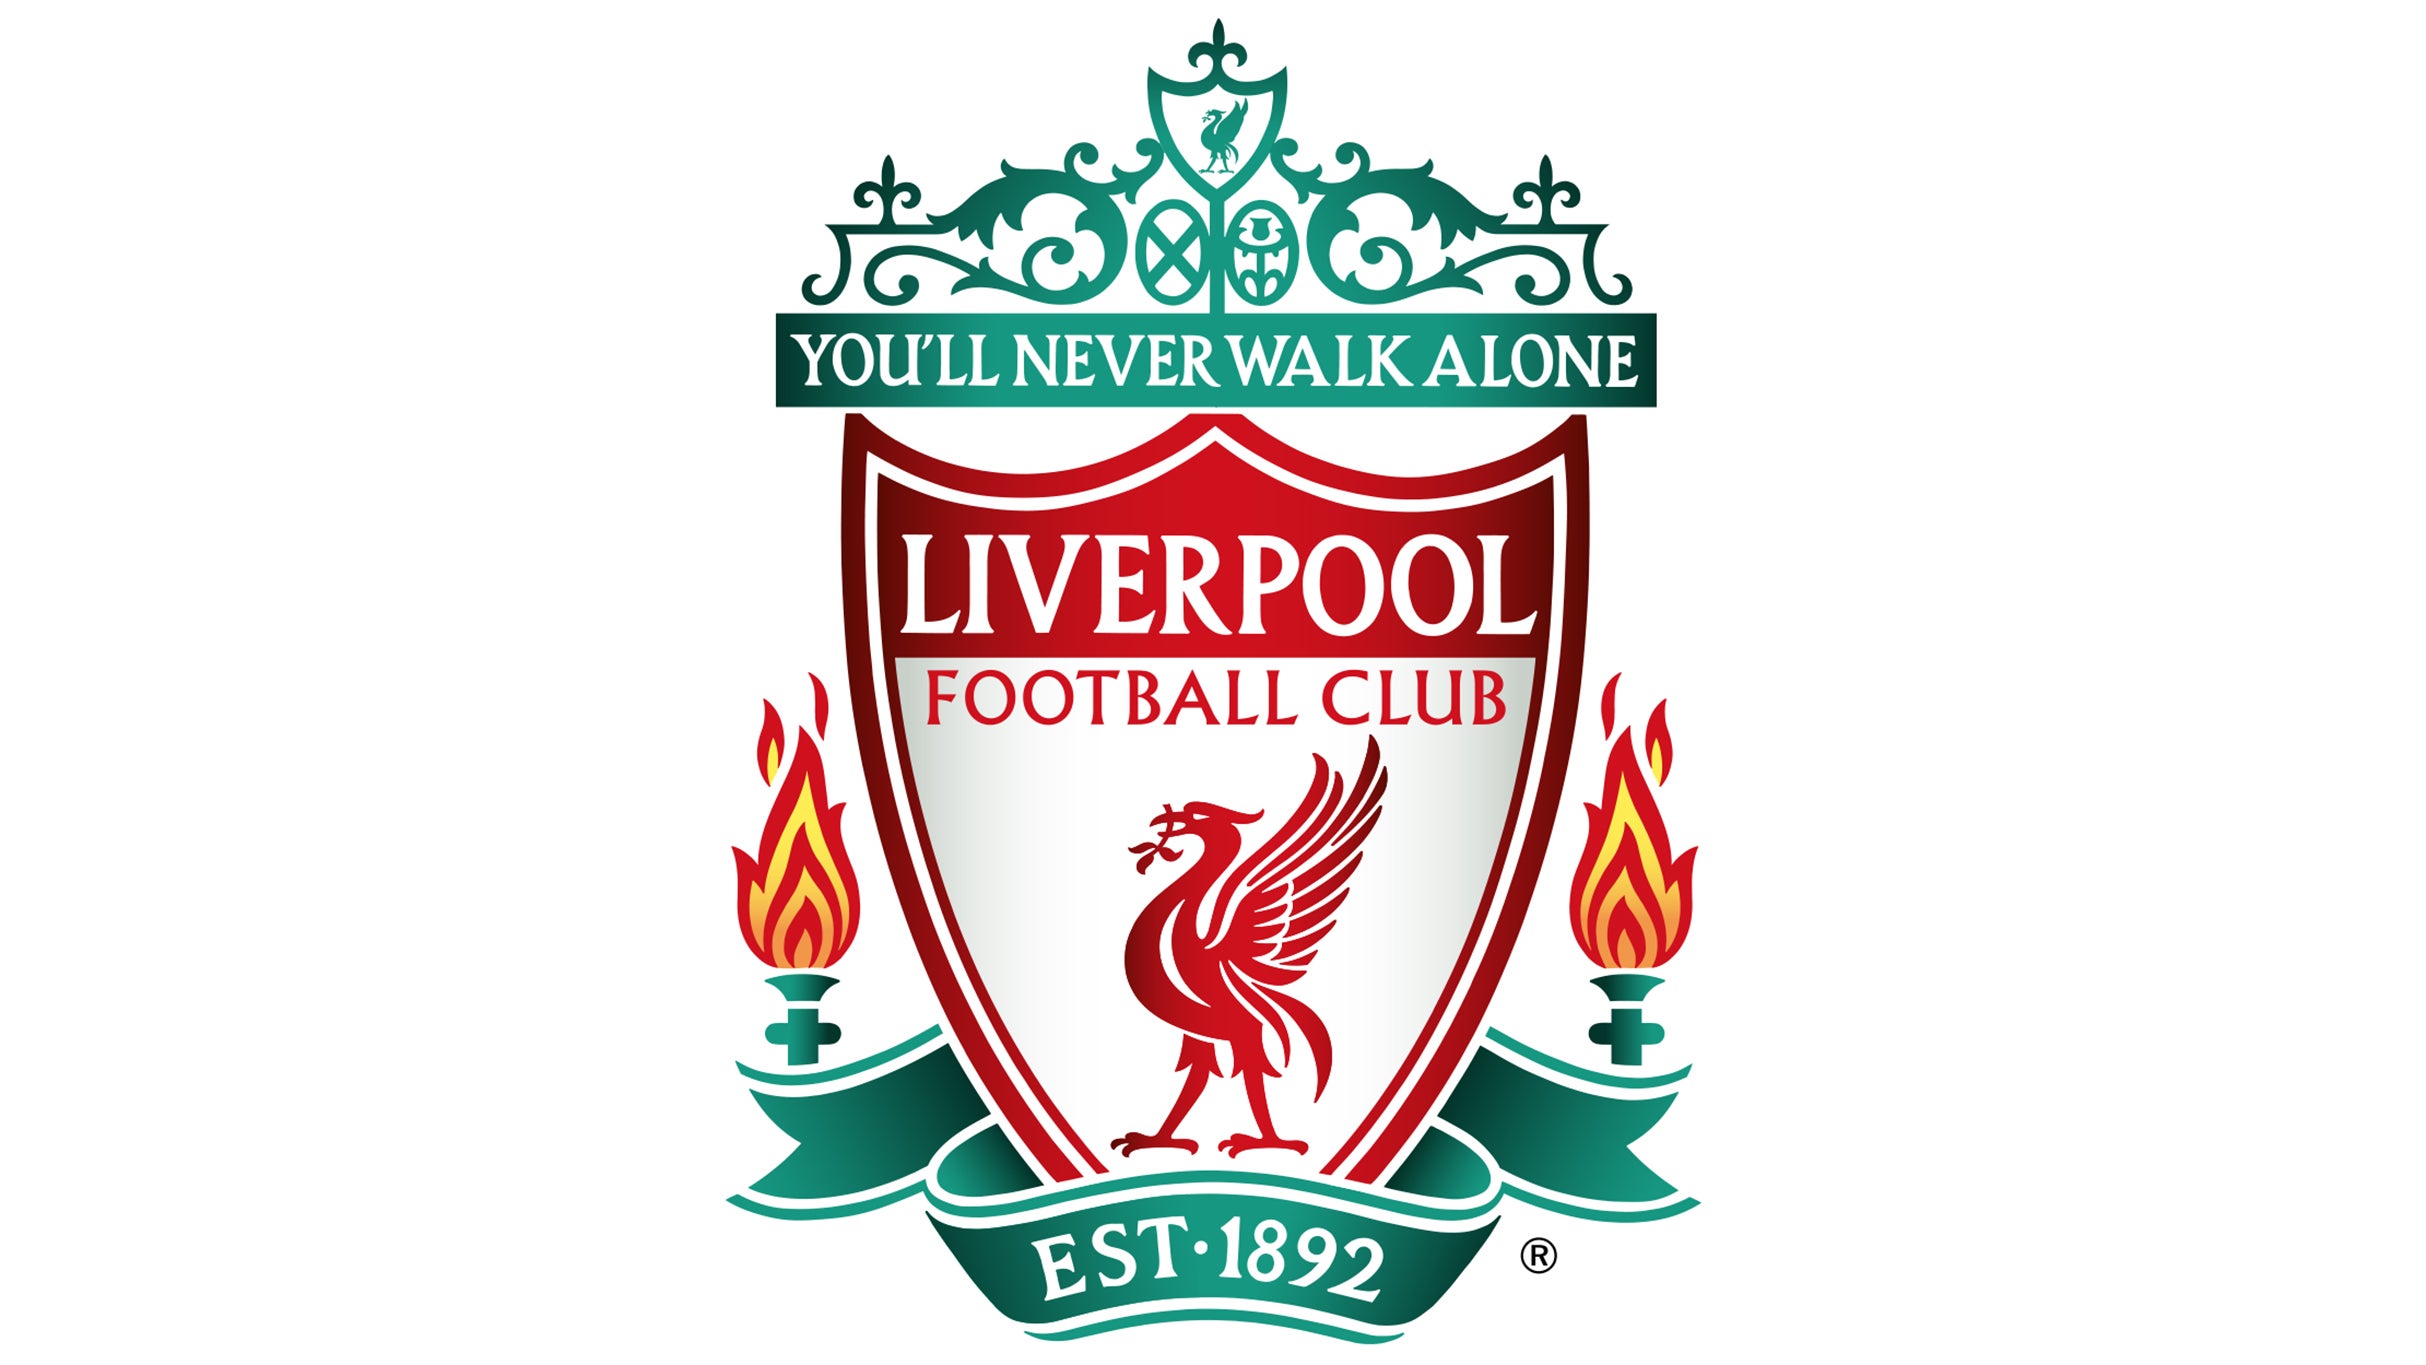 Liverpool FC v. Arsenal presales in Philadelphia